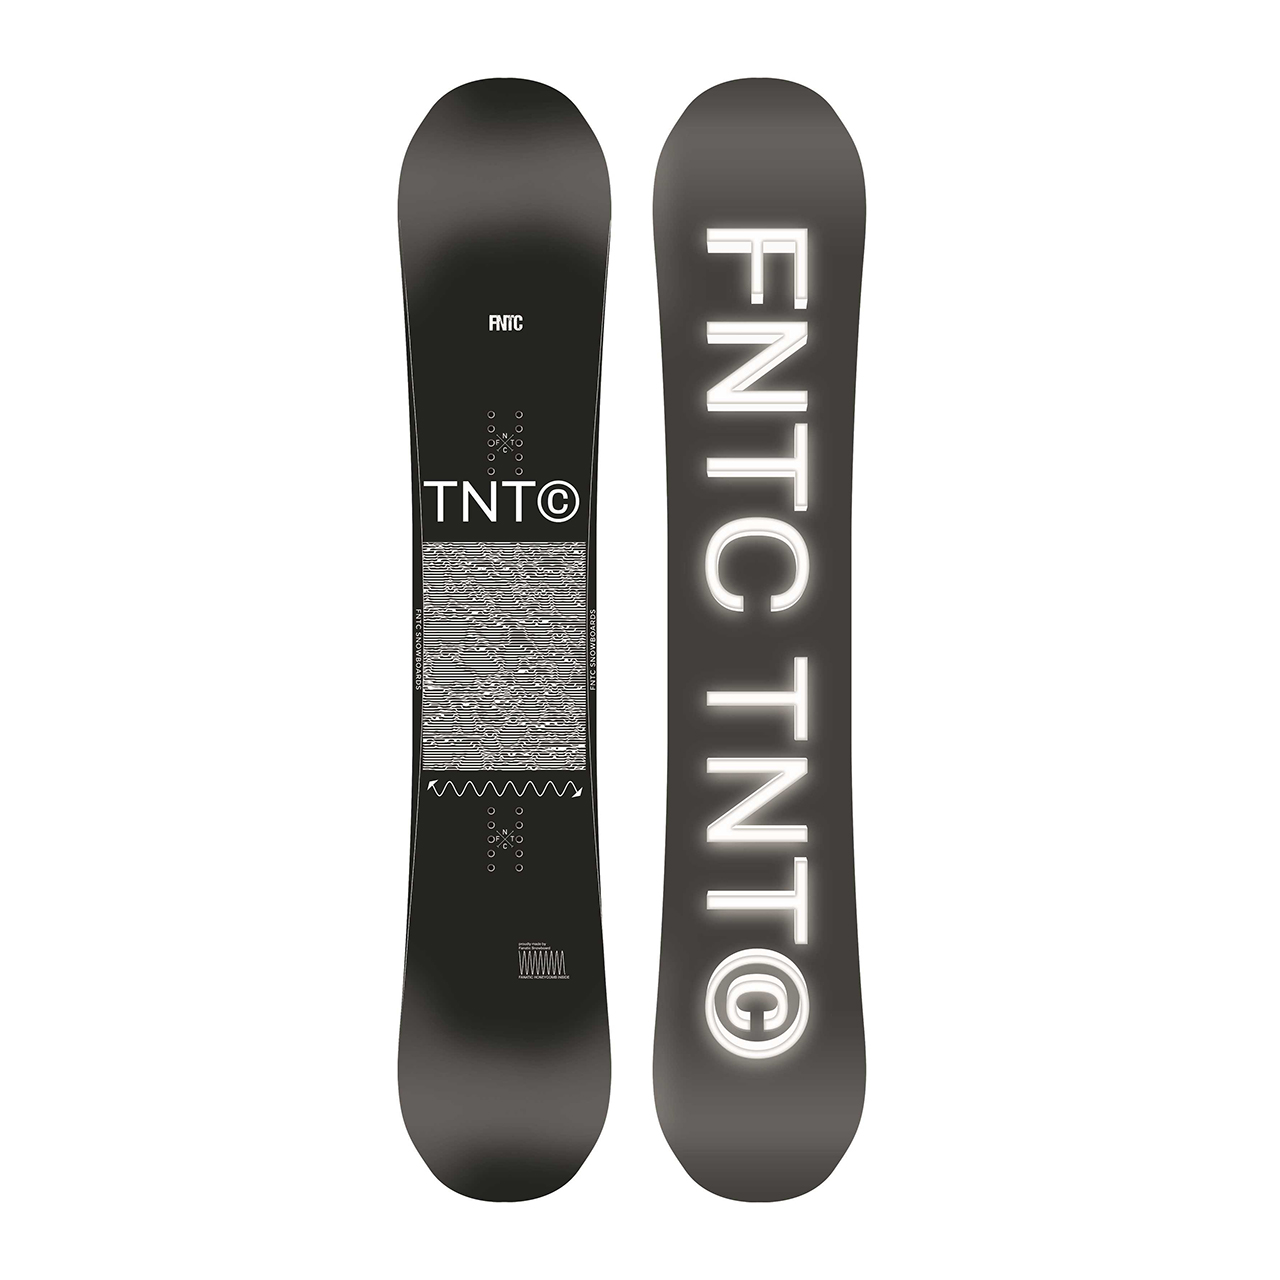 FNTC TNT C 150 22-23モデルスポーツ